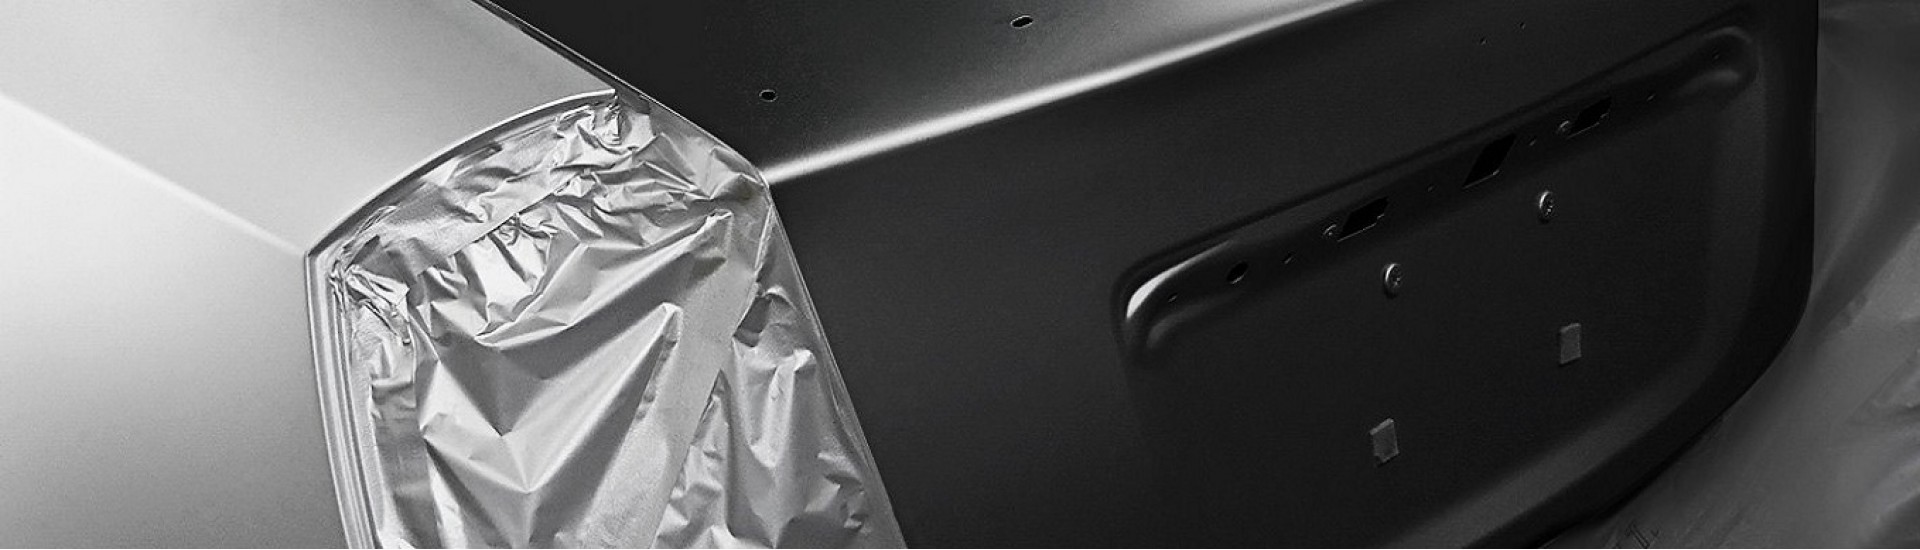 درب صندوق میتسوبیشی اوتلندر اسپرت SE 2014 